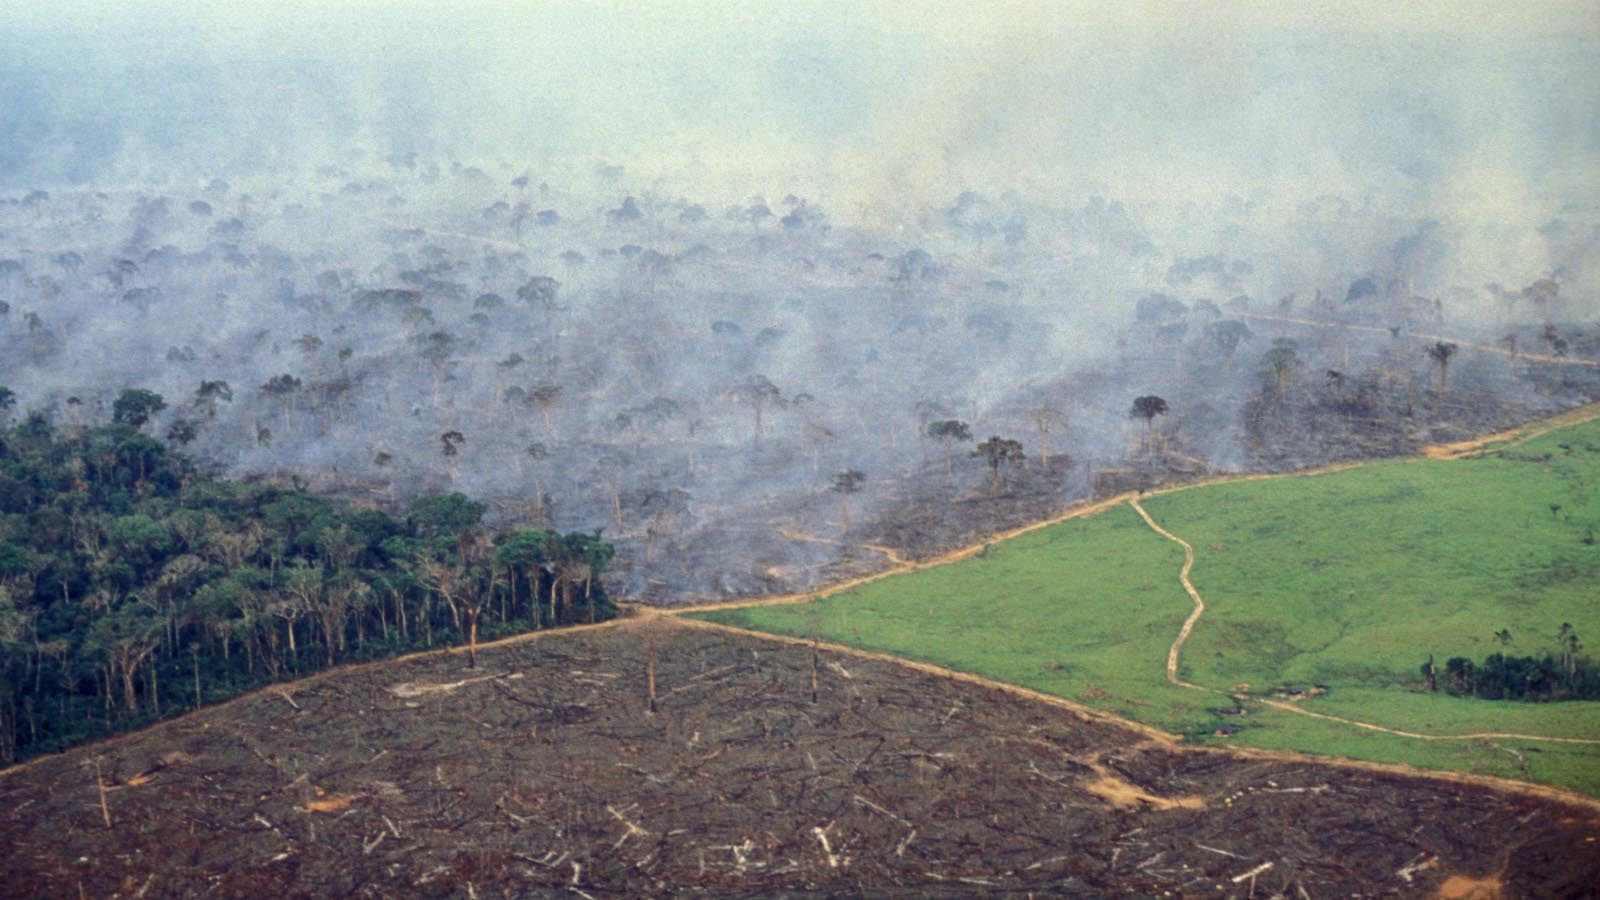 בירוא האמזונס לטובת מרעה לבקר. השריפה הוצתה כדי לפנות עוד חלק מהיער. (Photo by Ricardo Funari/Brazil Photos/LightRocket via Getty Images)